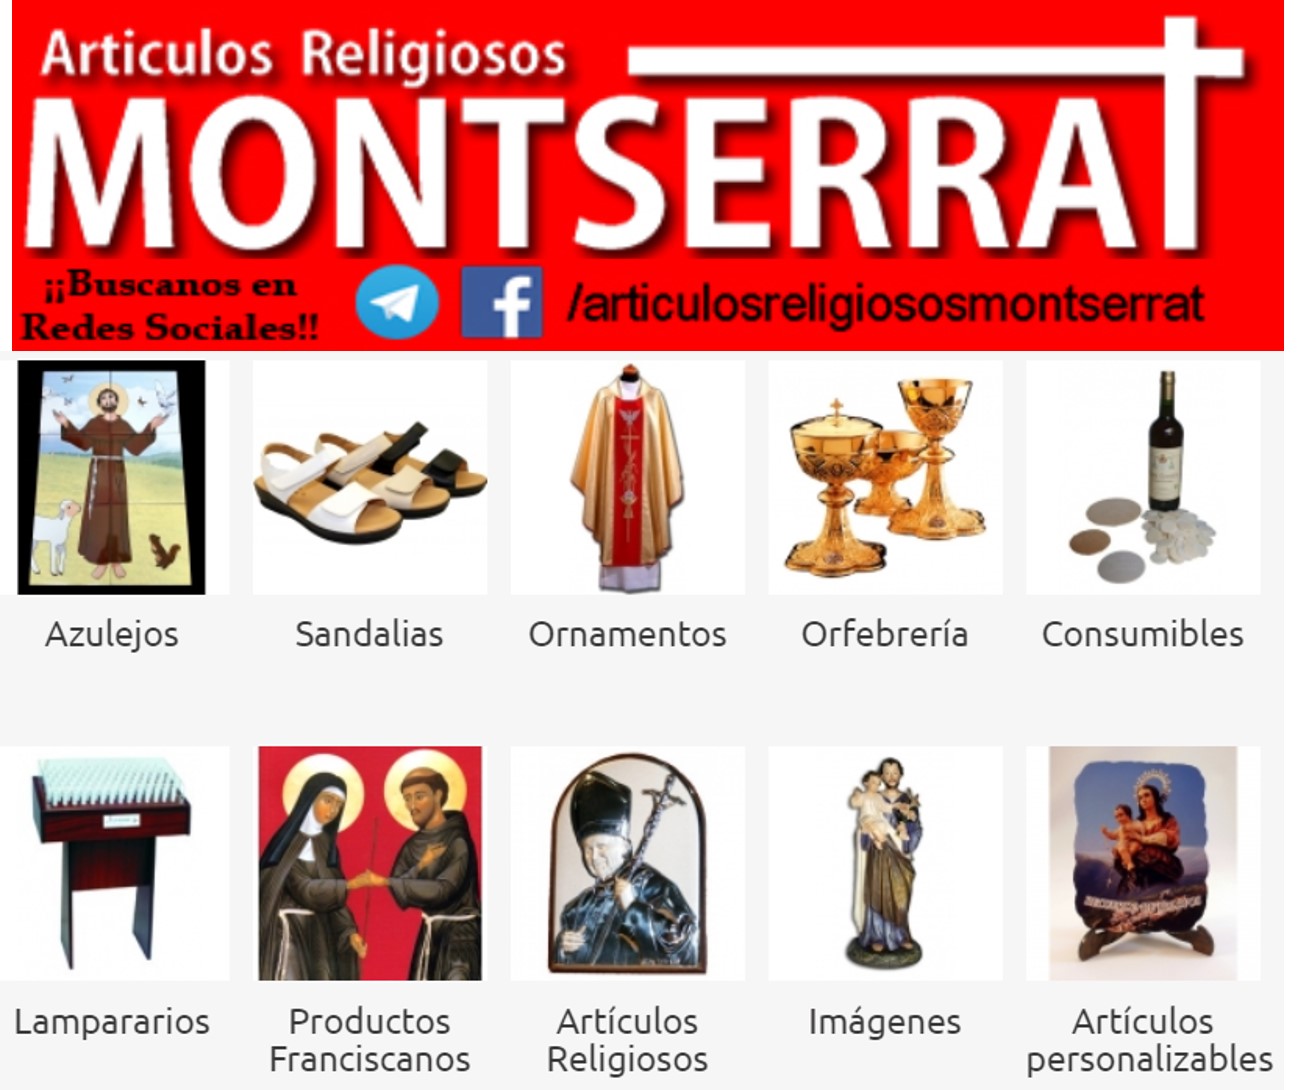 Images Artículos Religiosos Montserrat